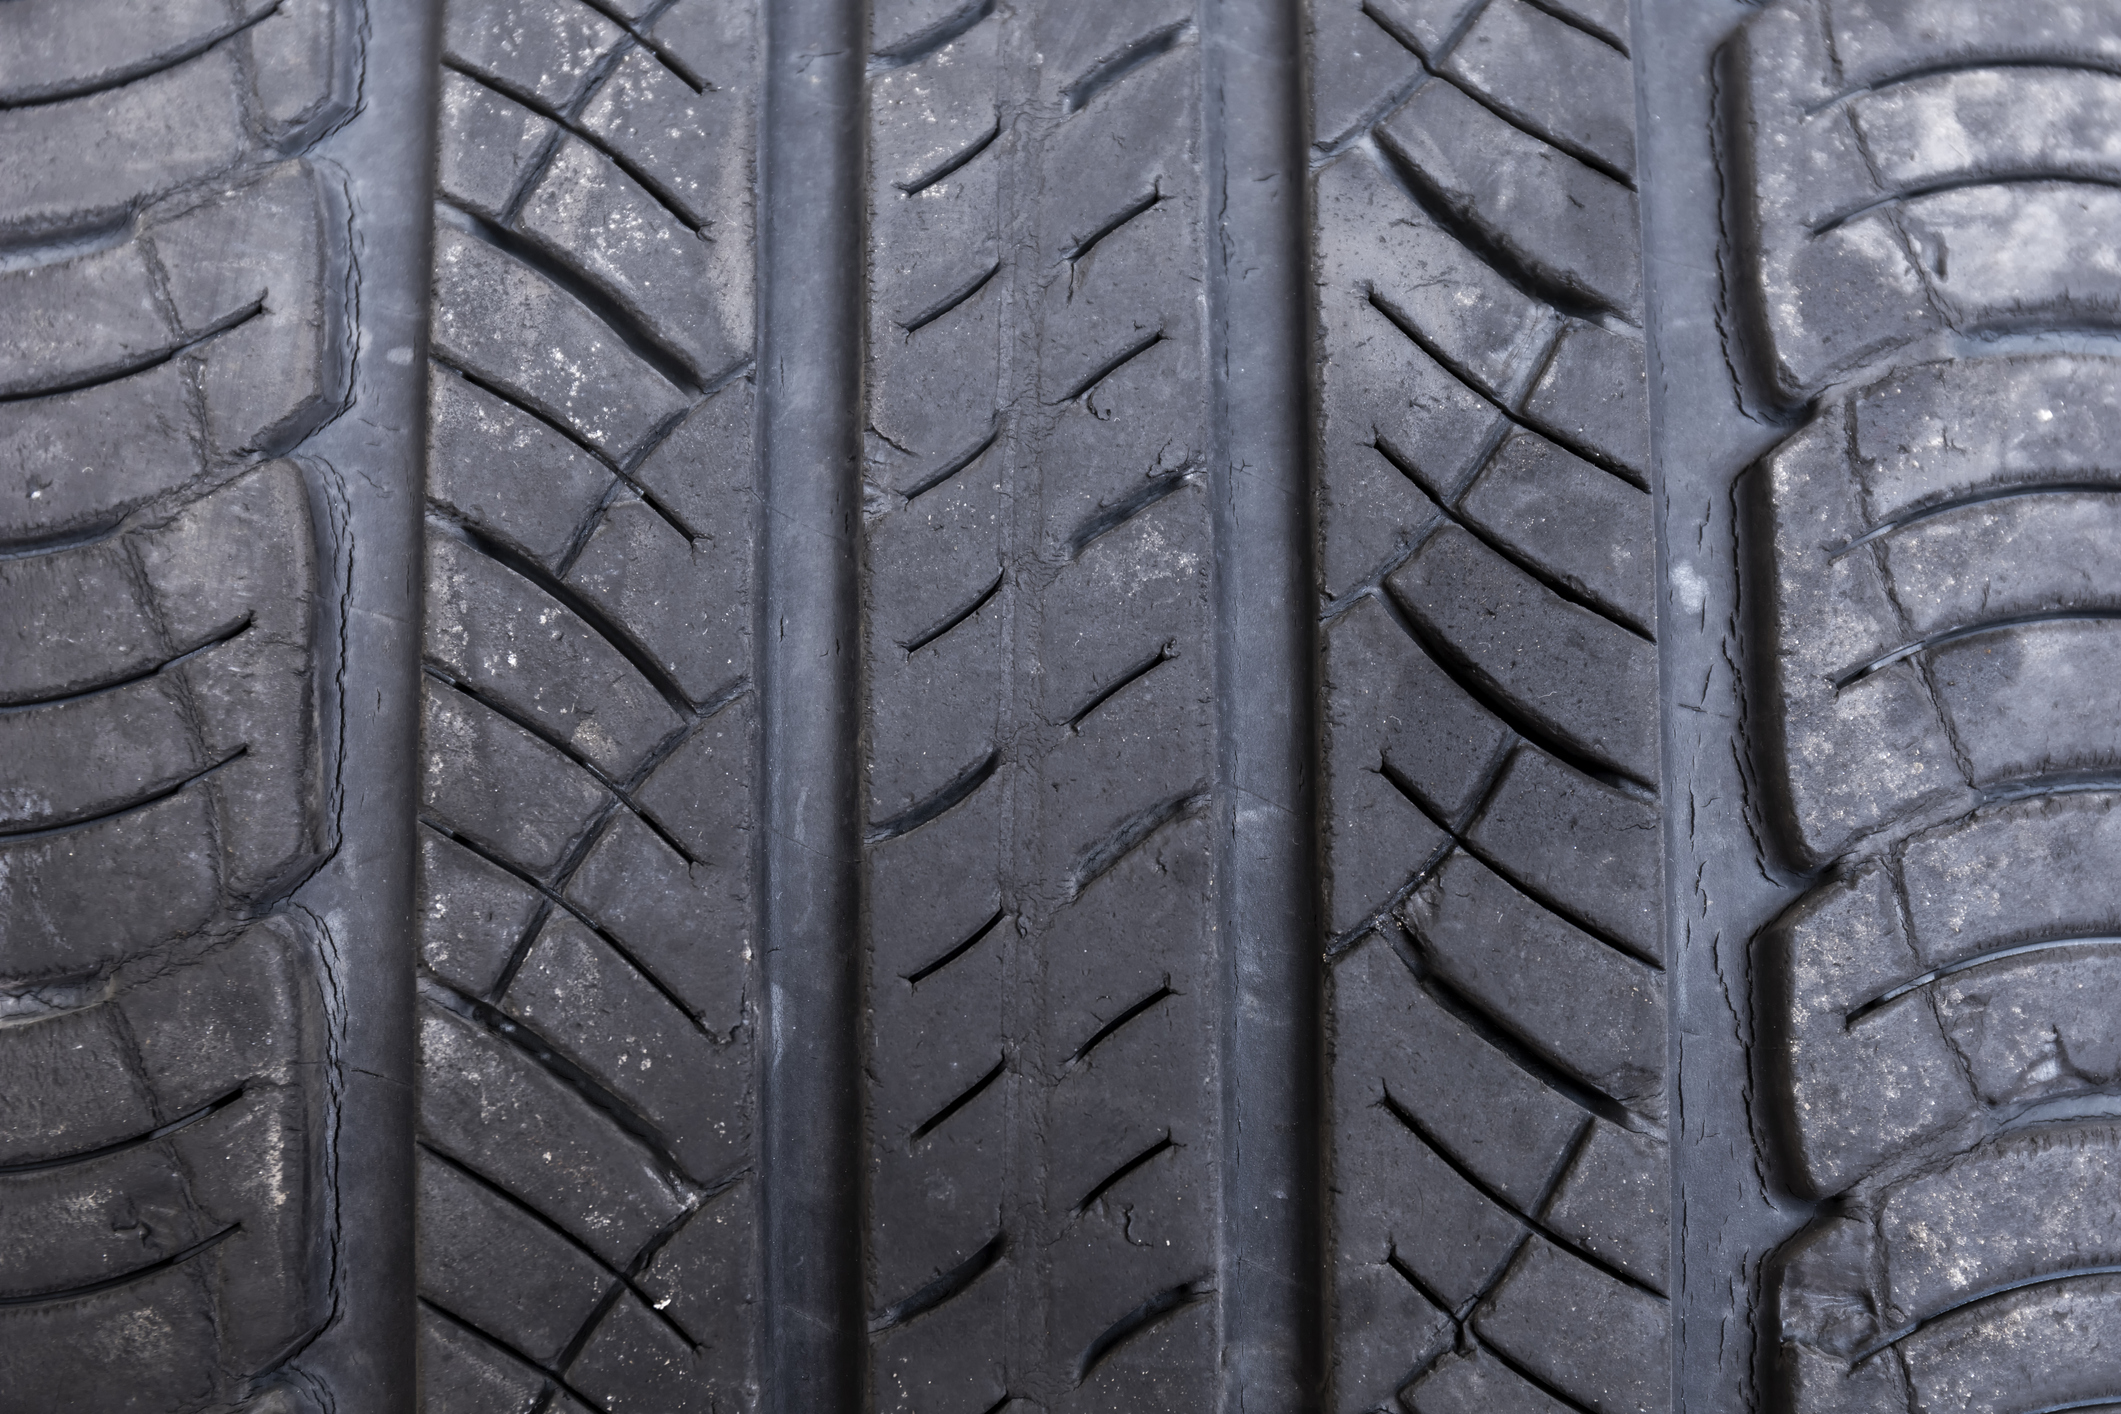 Comment faire pour vérifier l'état de la bande de roulement d'un pneu